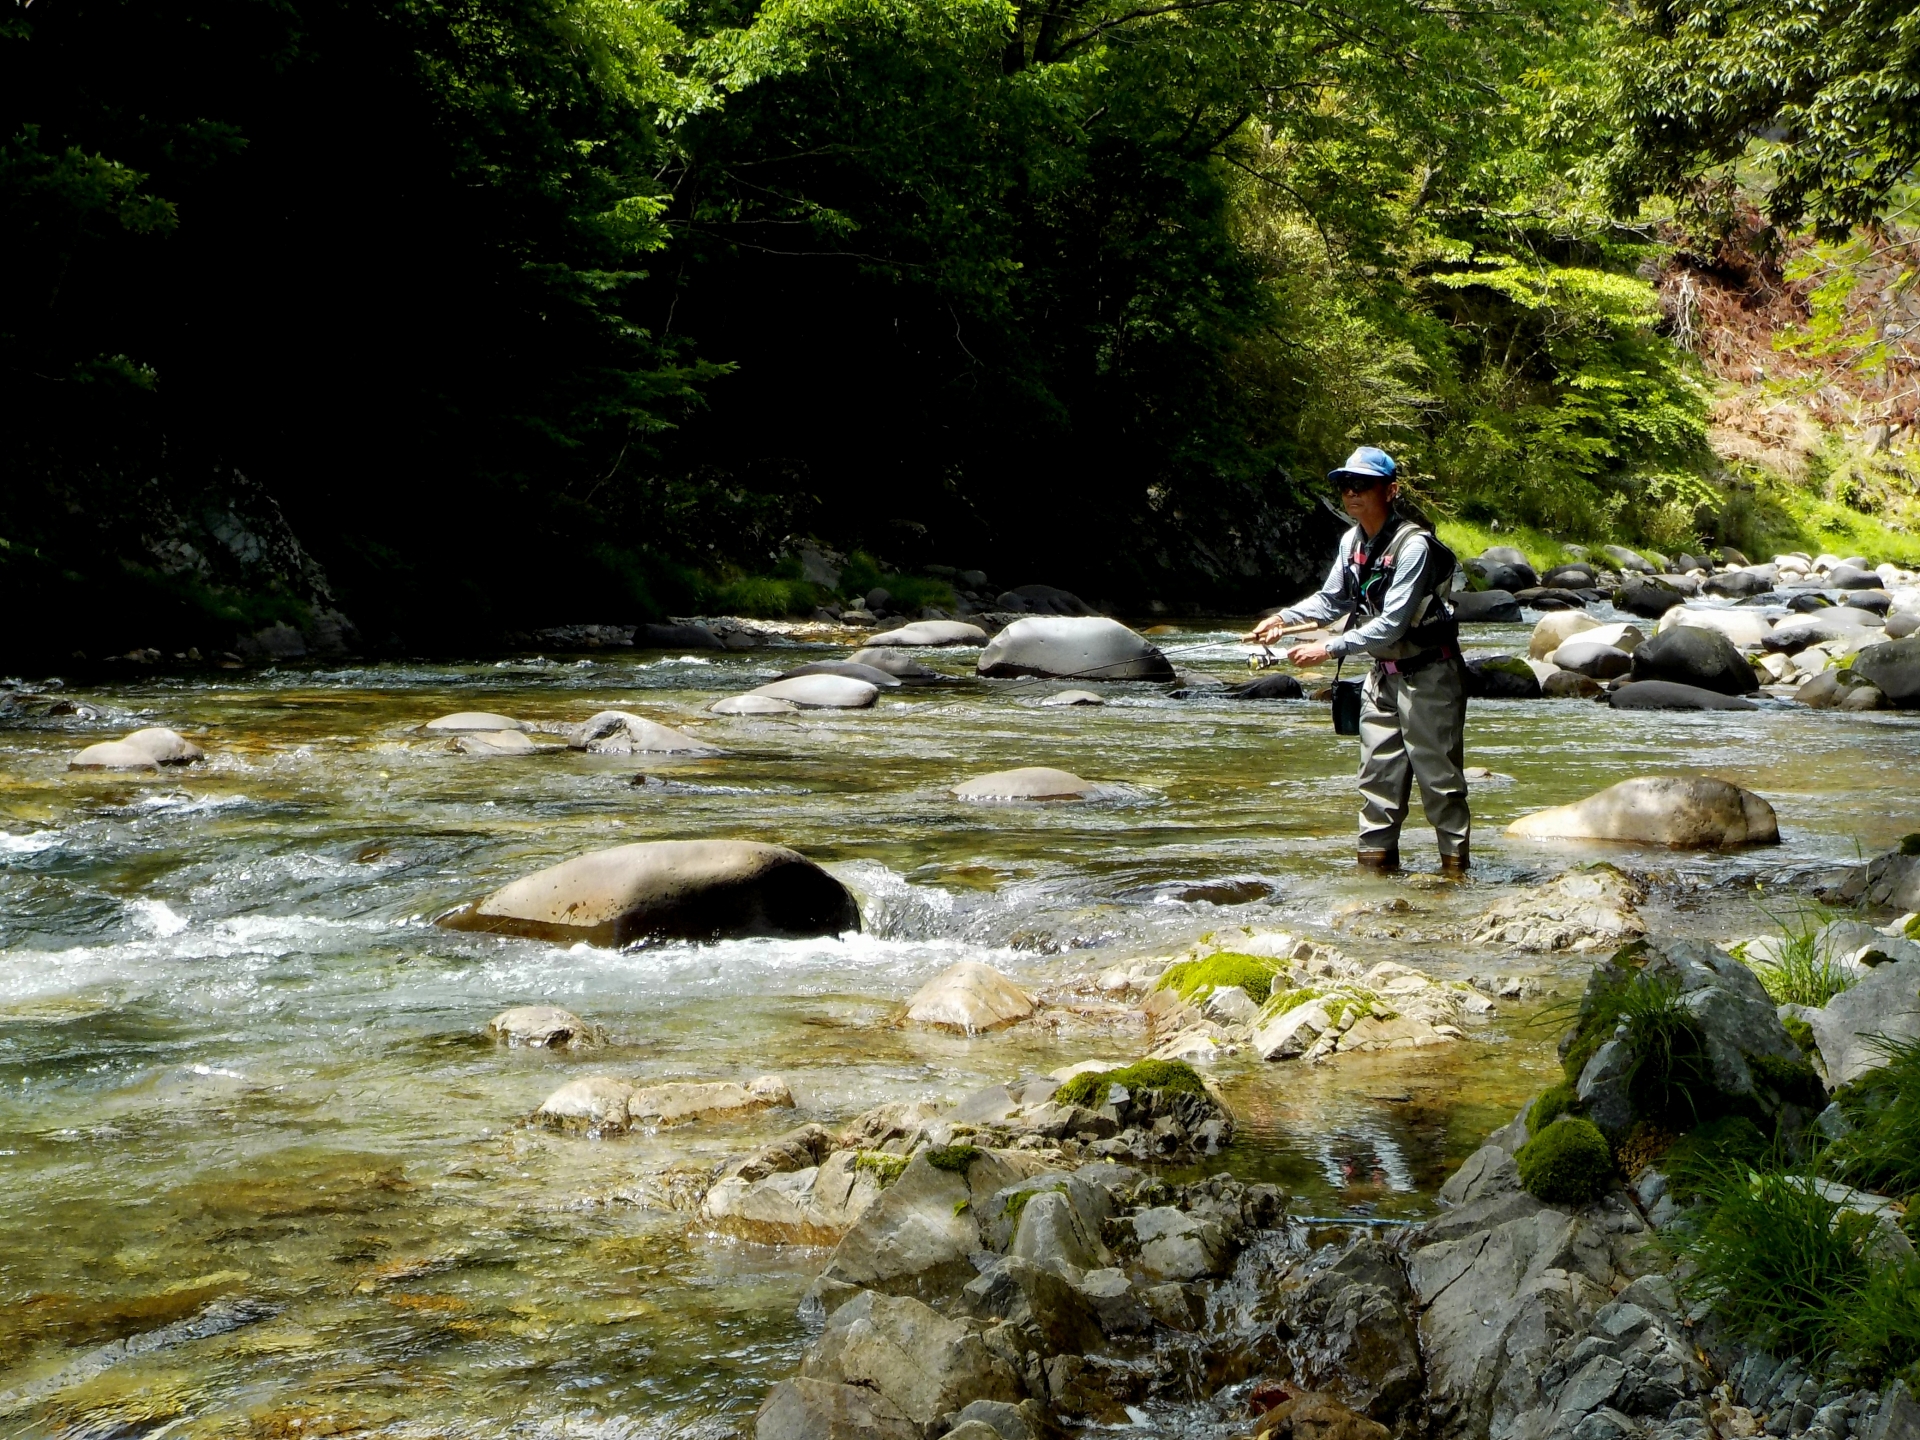 渓流ルアーフィッシングのすすめ 渓流ルアー釣りは最高の趣味 その魅力と始め方